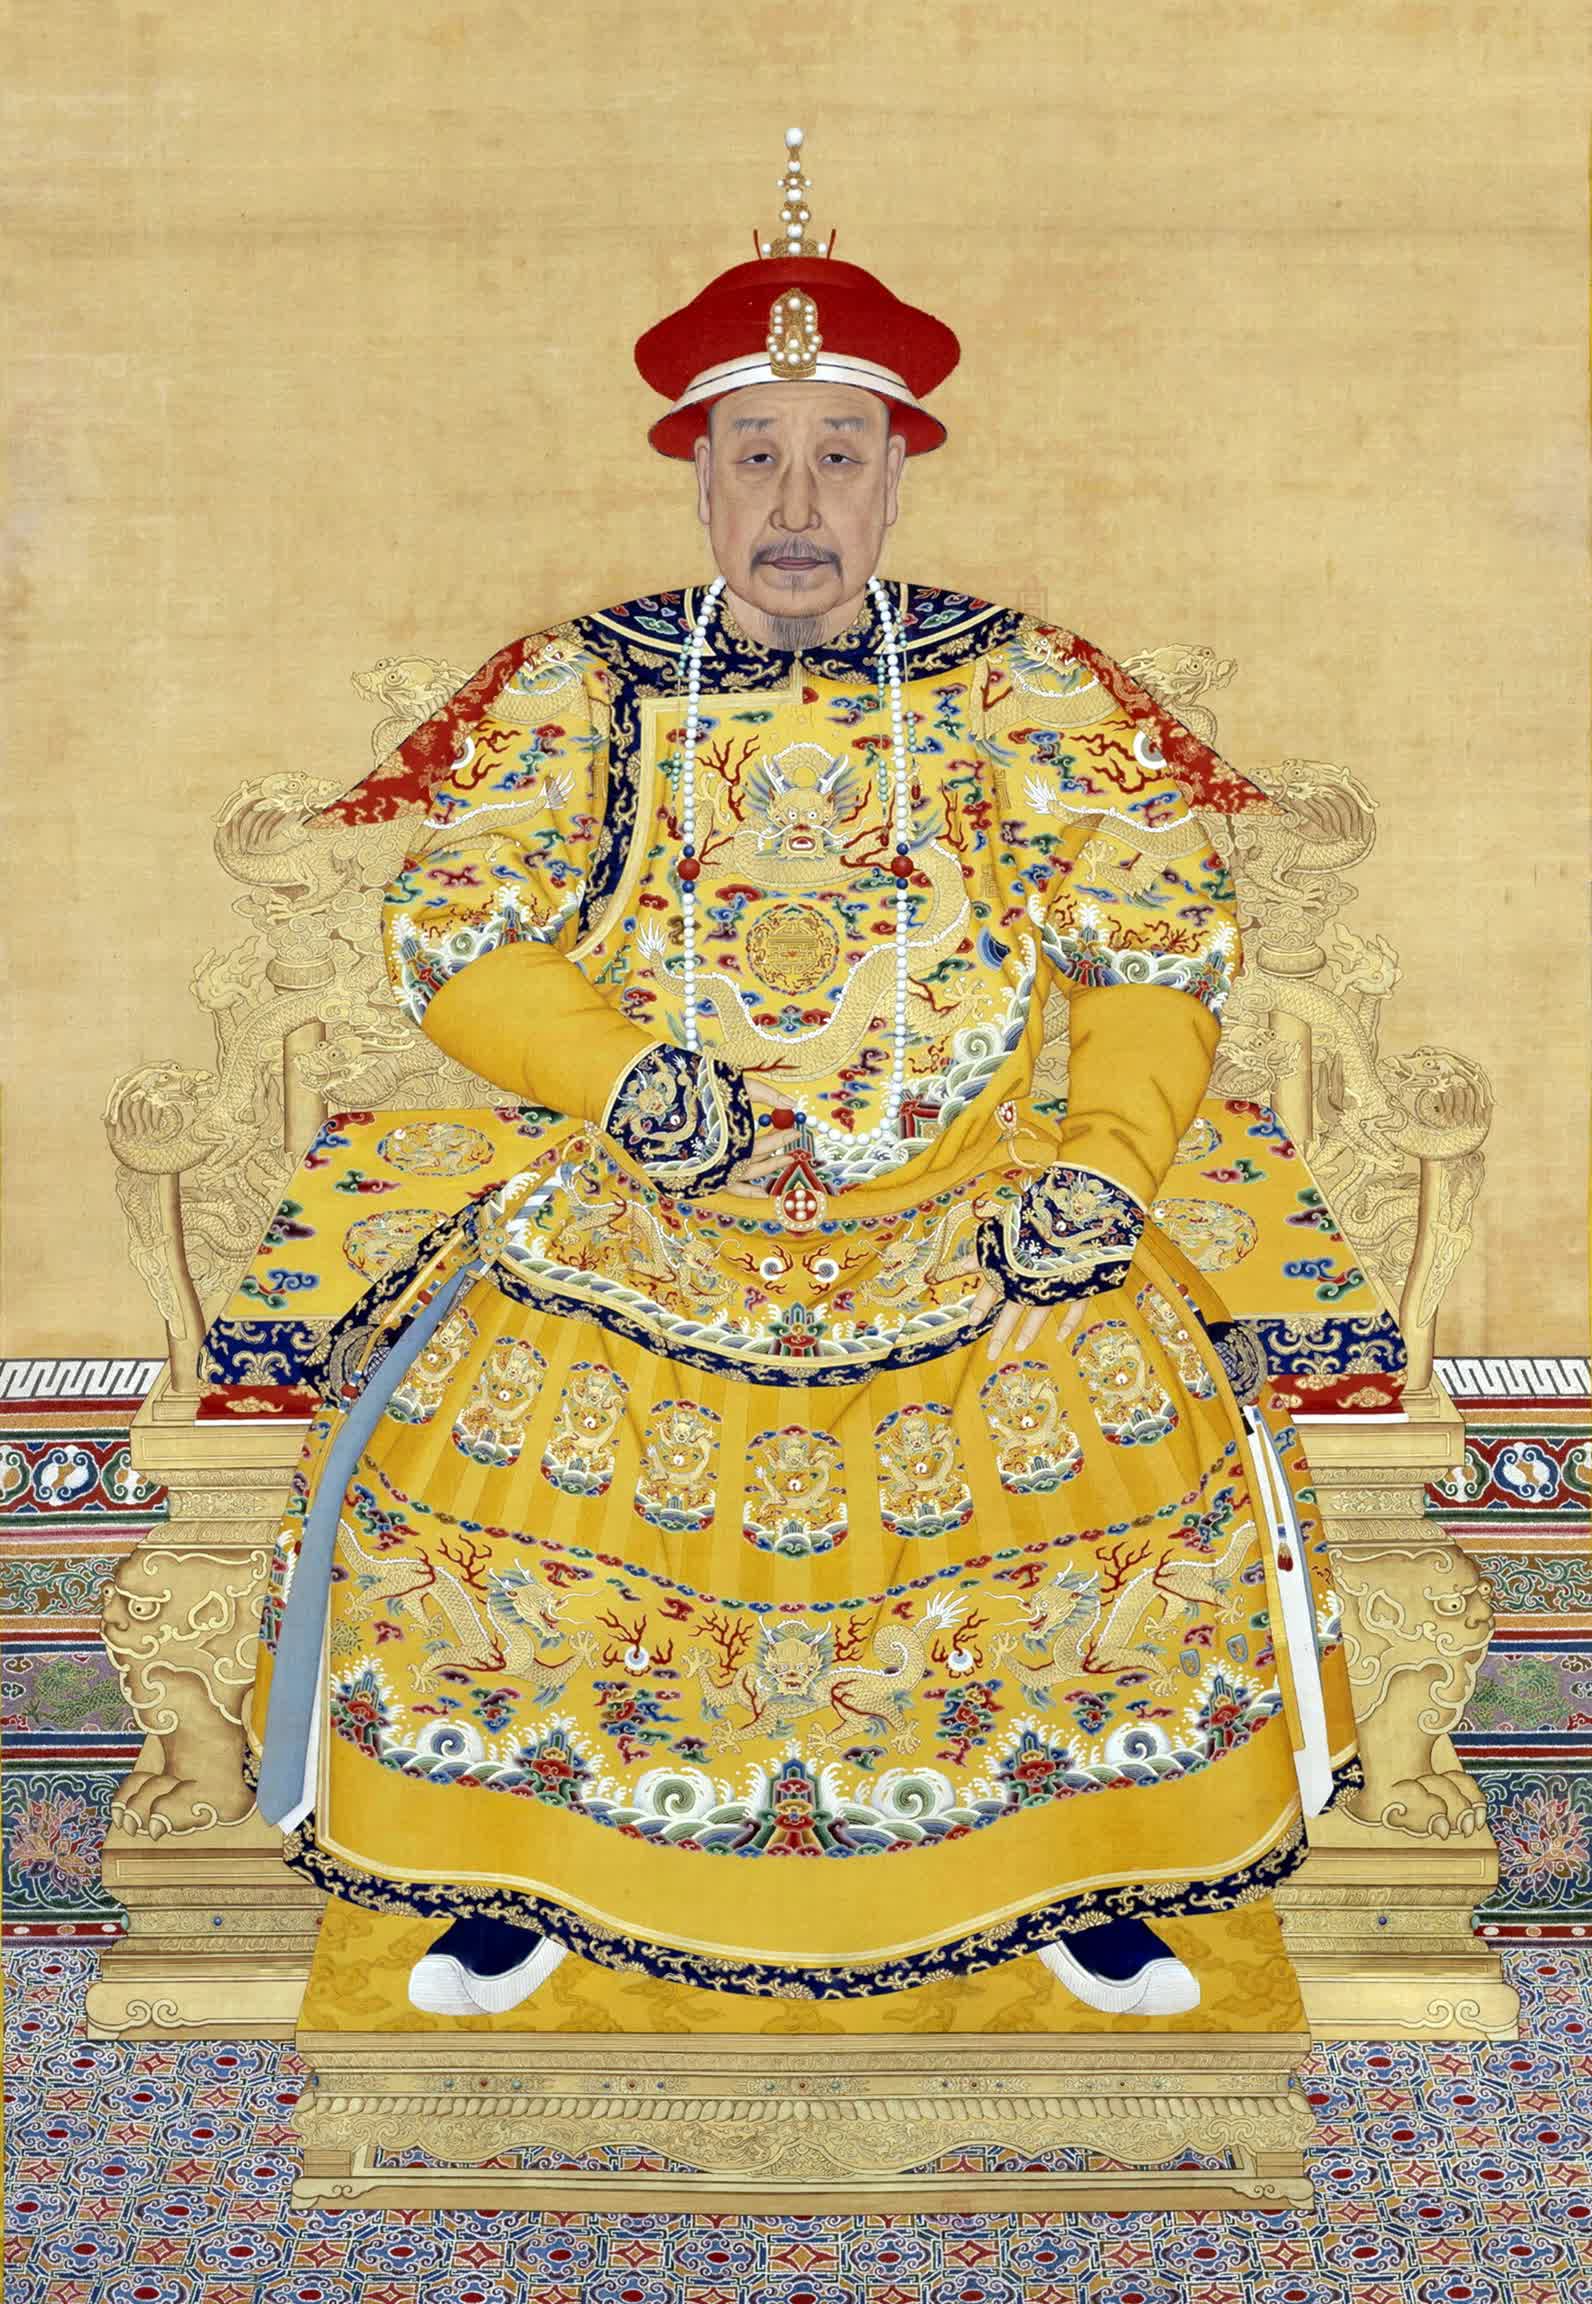 Phi tần nhỏ tuổi nhất của Càn Long: Là cháu gái 13 tuổi của Phú Sát Hoàng hậu, trở thành góa phụ chỉ sau 1 năm lấy chồng - Ảnh 1.